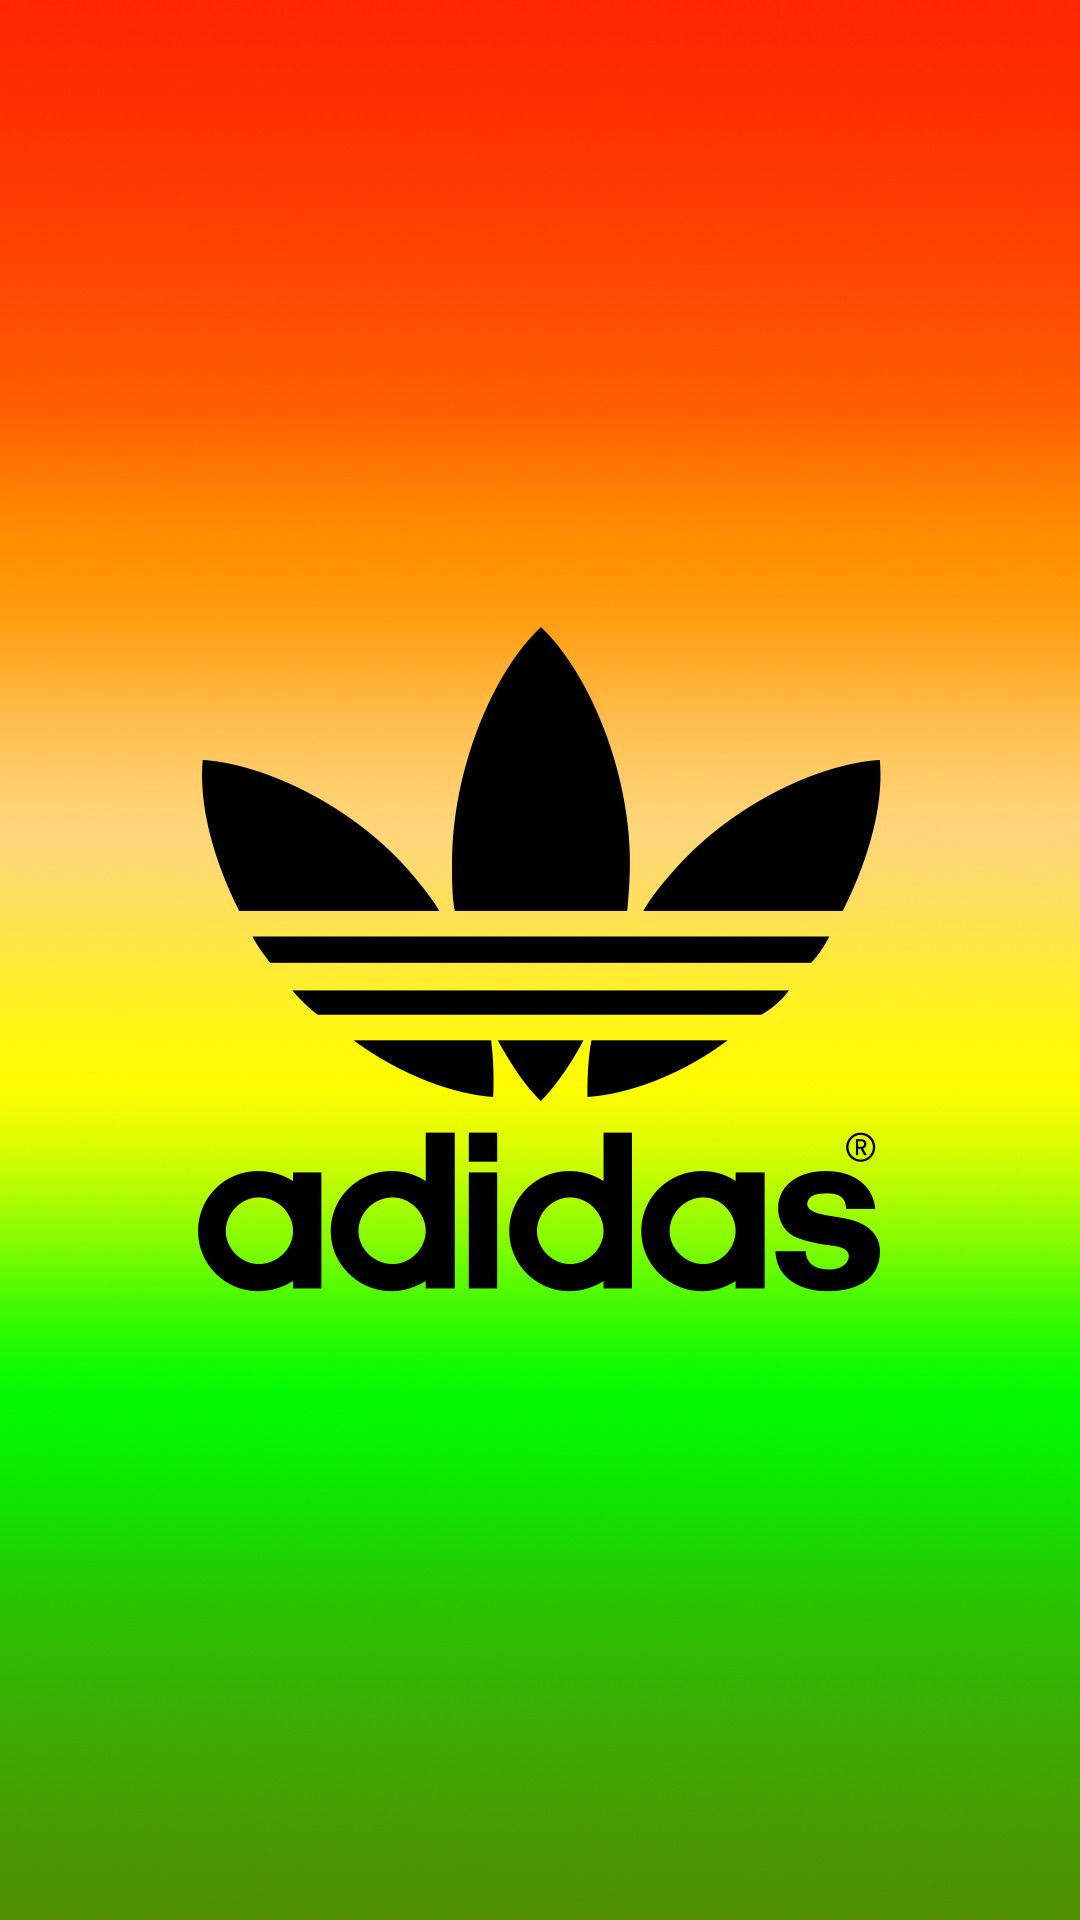 adidas jamaica logo